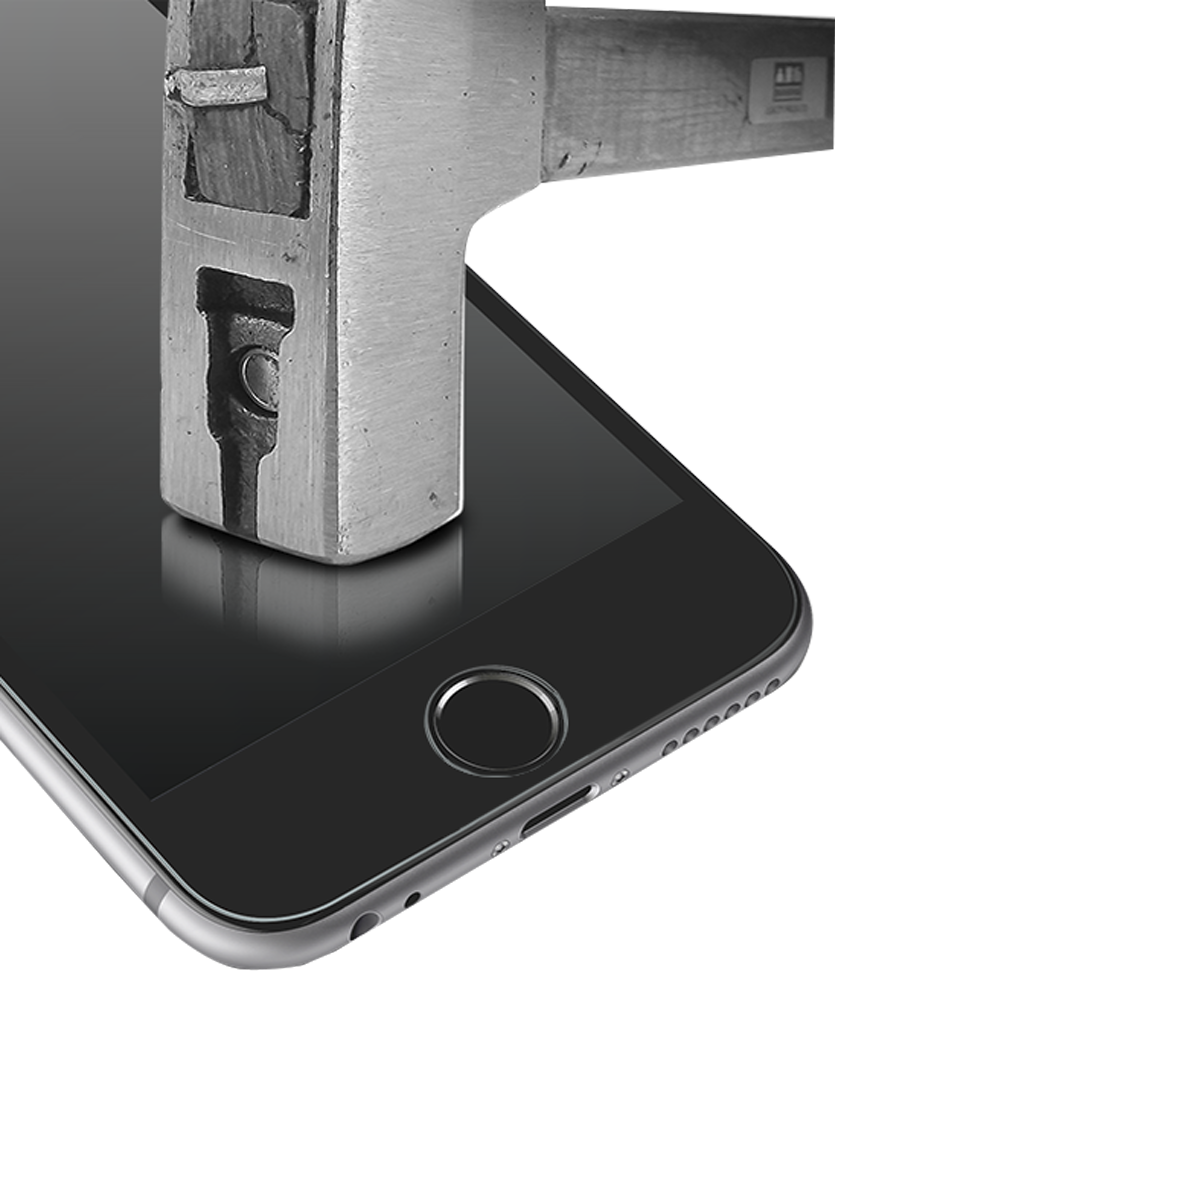 iPhone 7/8 Plus için spada Mat Tam kaplayan Beyaz Ekran koruma camı